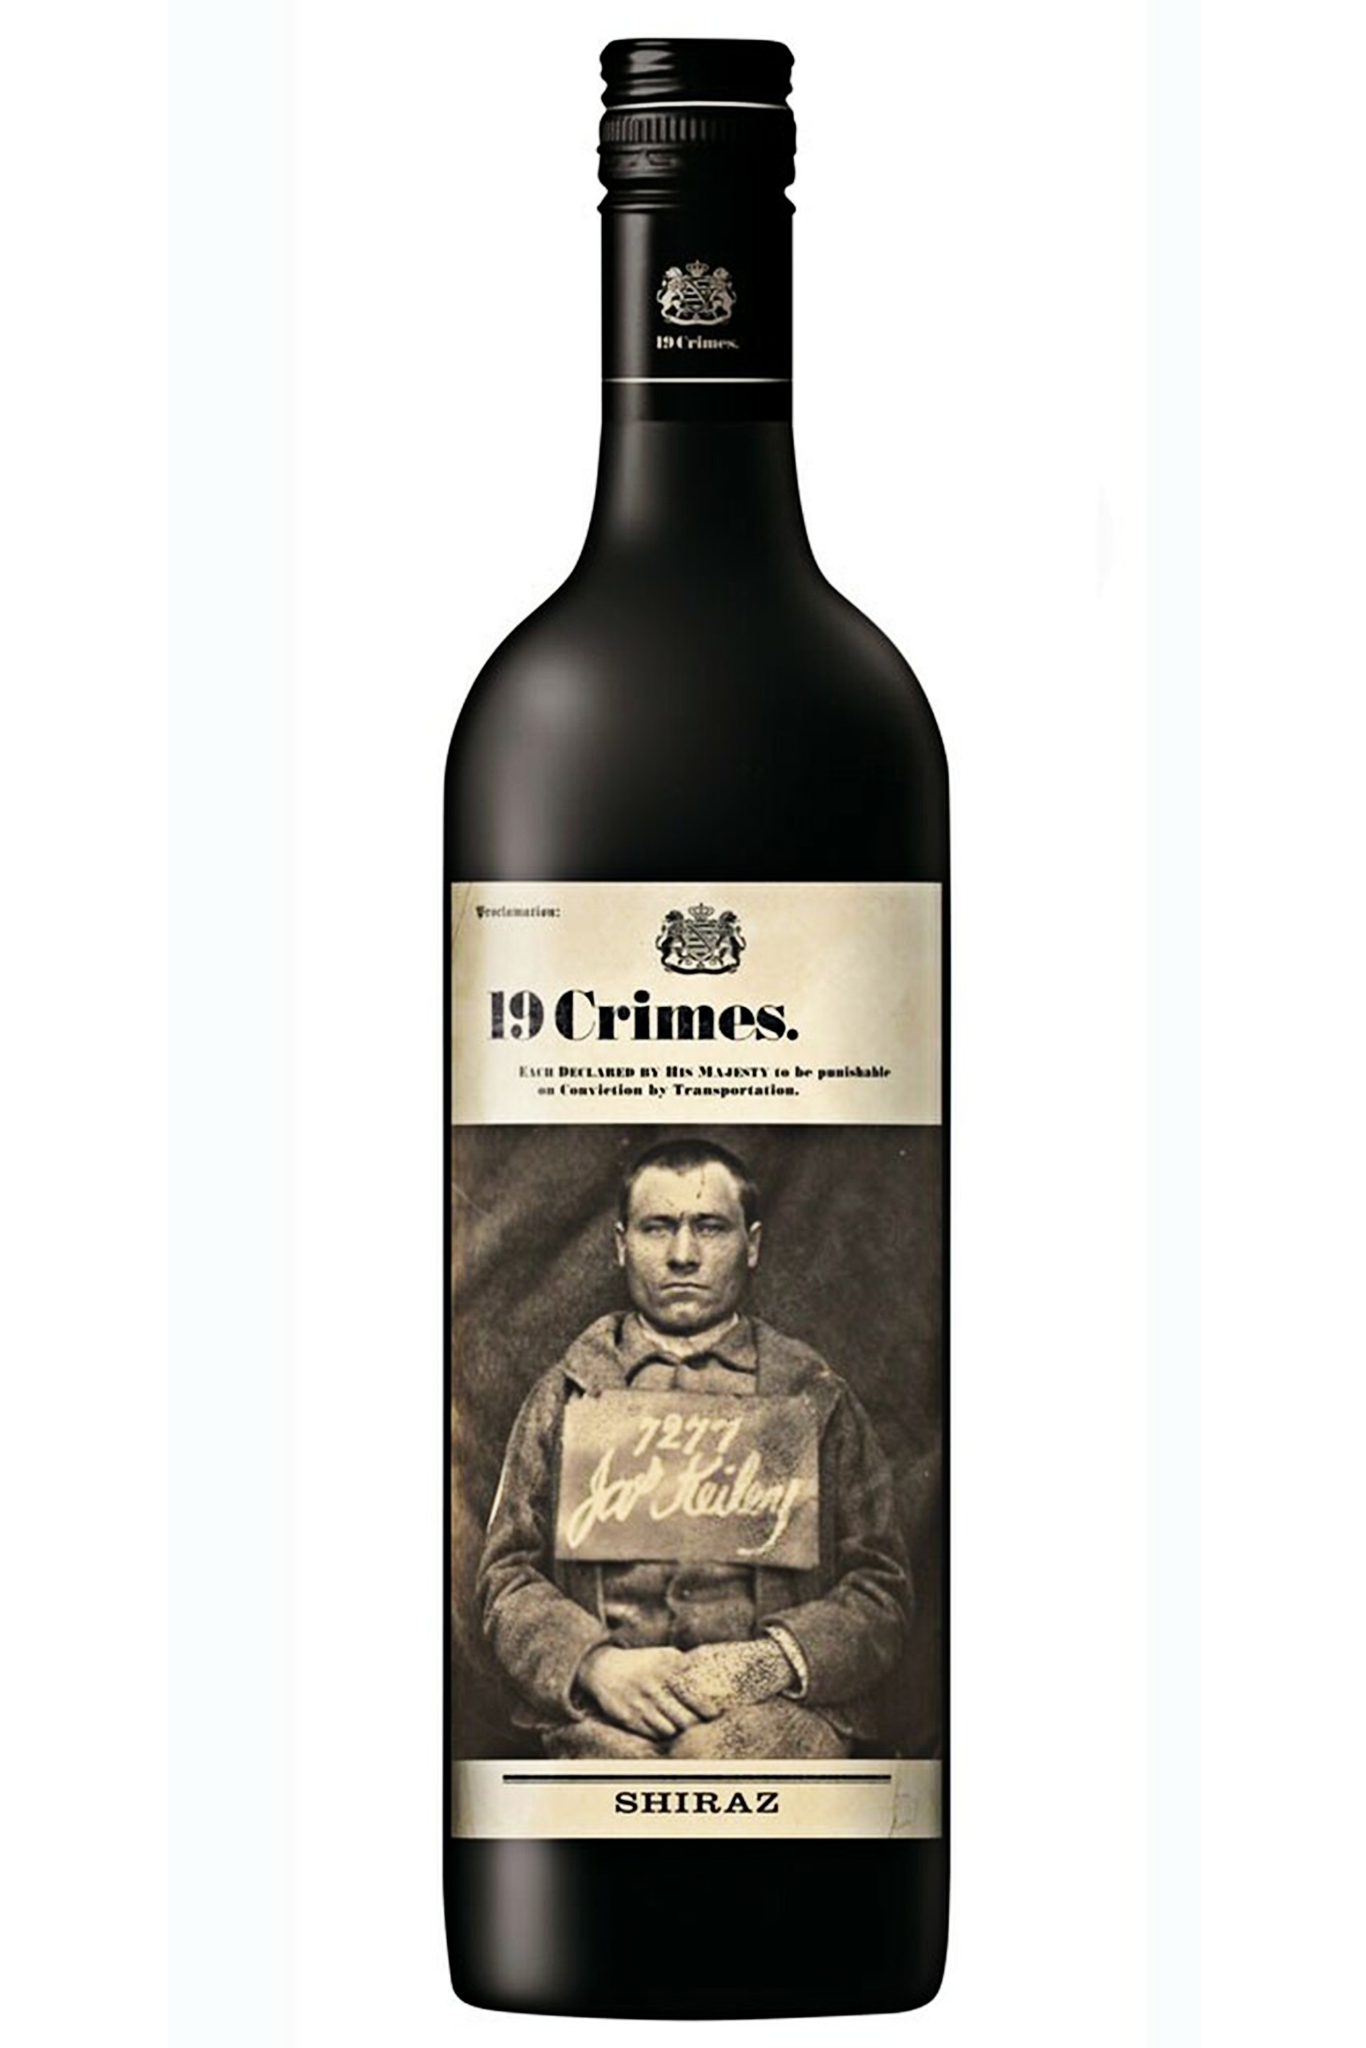 Rượu Vang 19 Crimes Shiraz